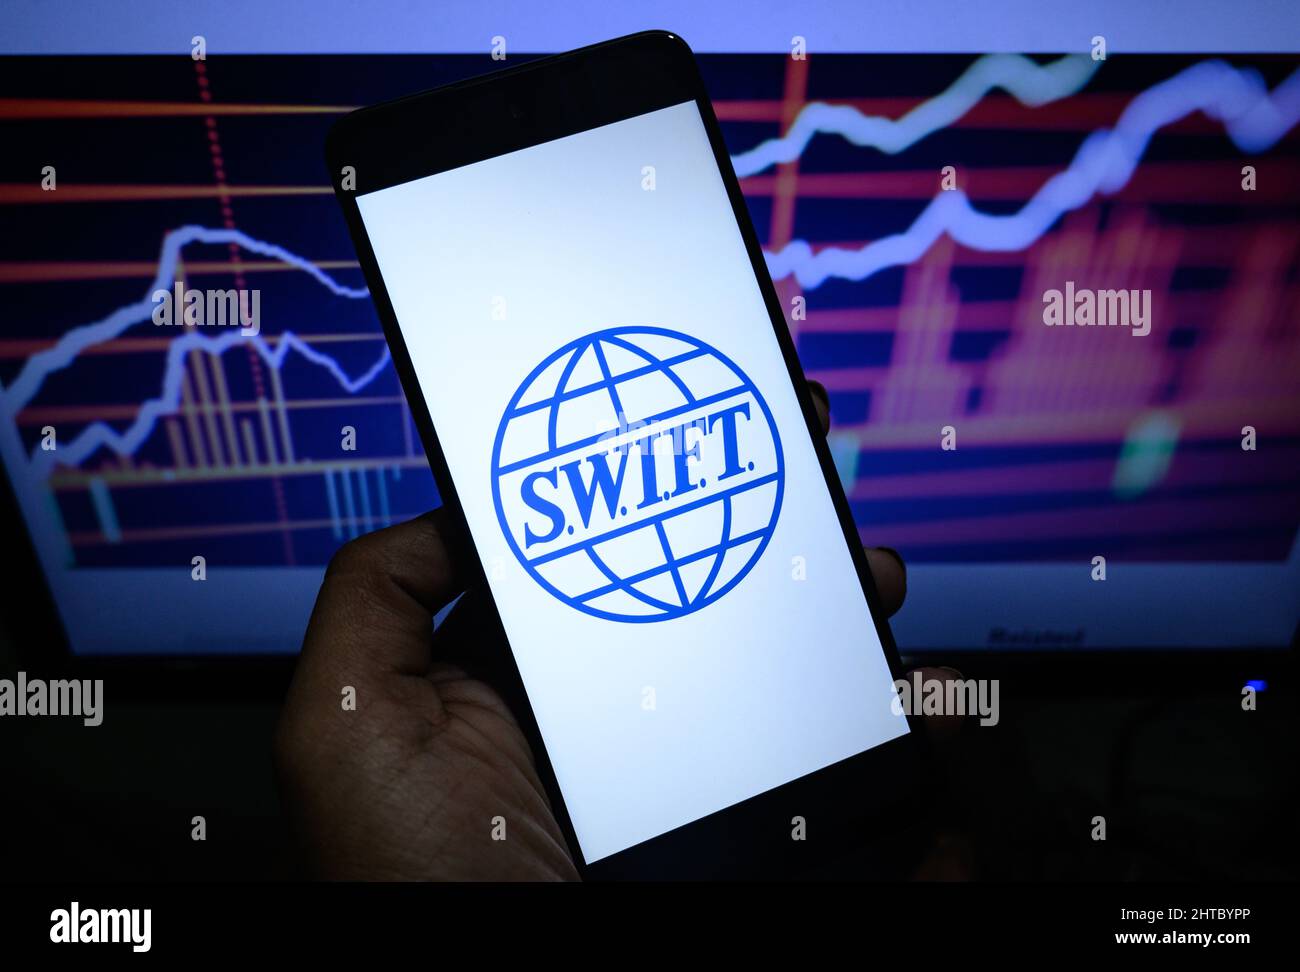 Die Europäische Union, die Vereinigten Staaten und westliche Partner haben angekündigt, eine Reihe russischer Banken vom SWIFT-Zahlungssystem zu trennen. Stockfoto